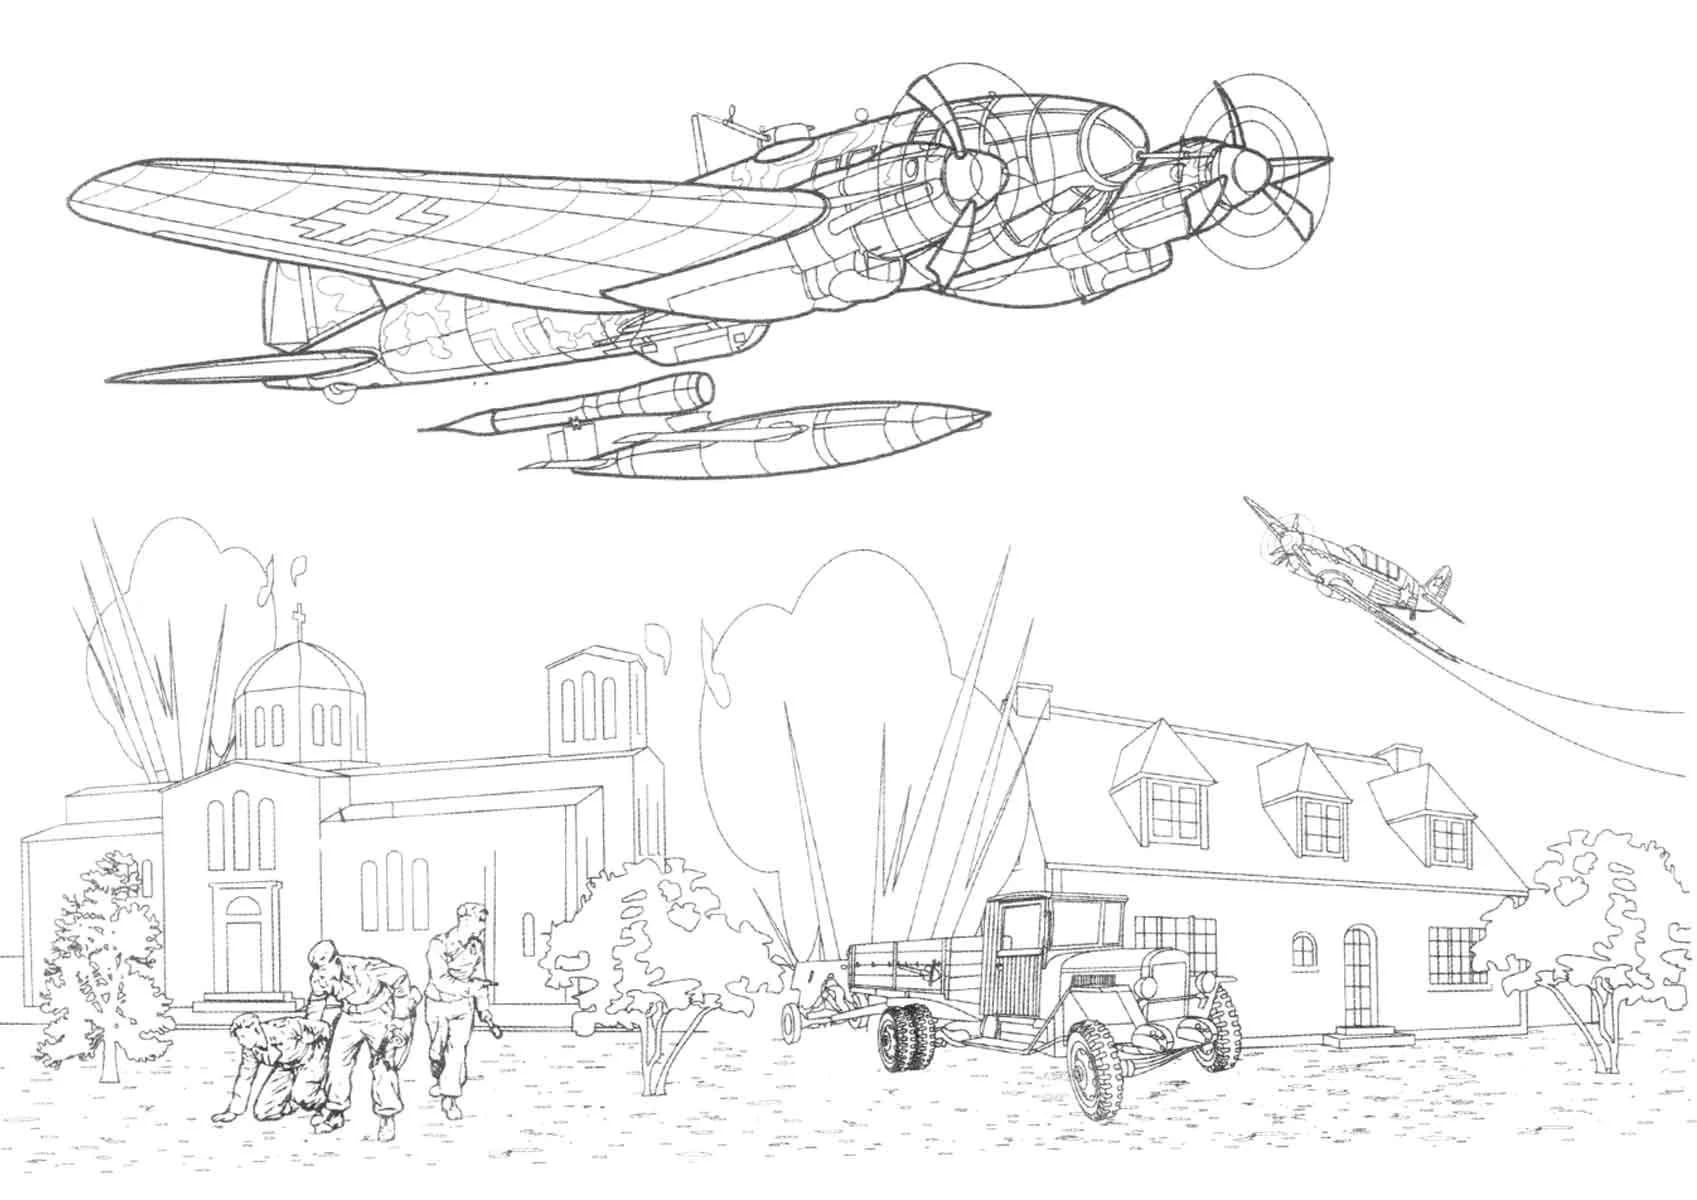 Desenhos de Aviões para colorir - 100 imagens para impressão gratuita